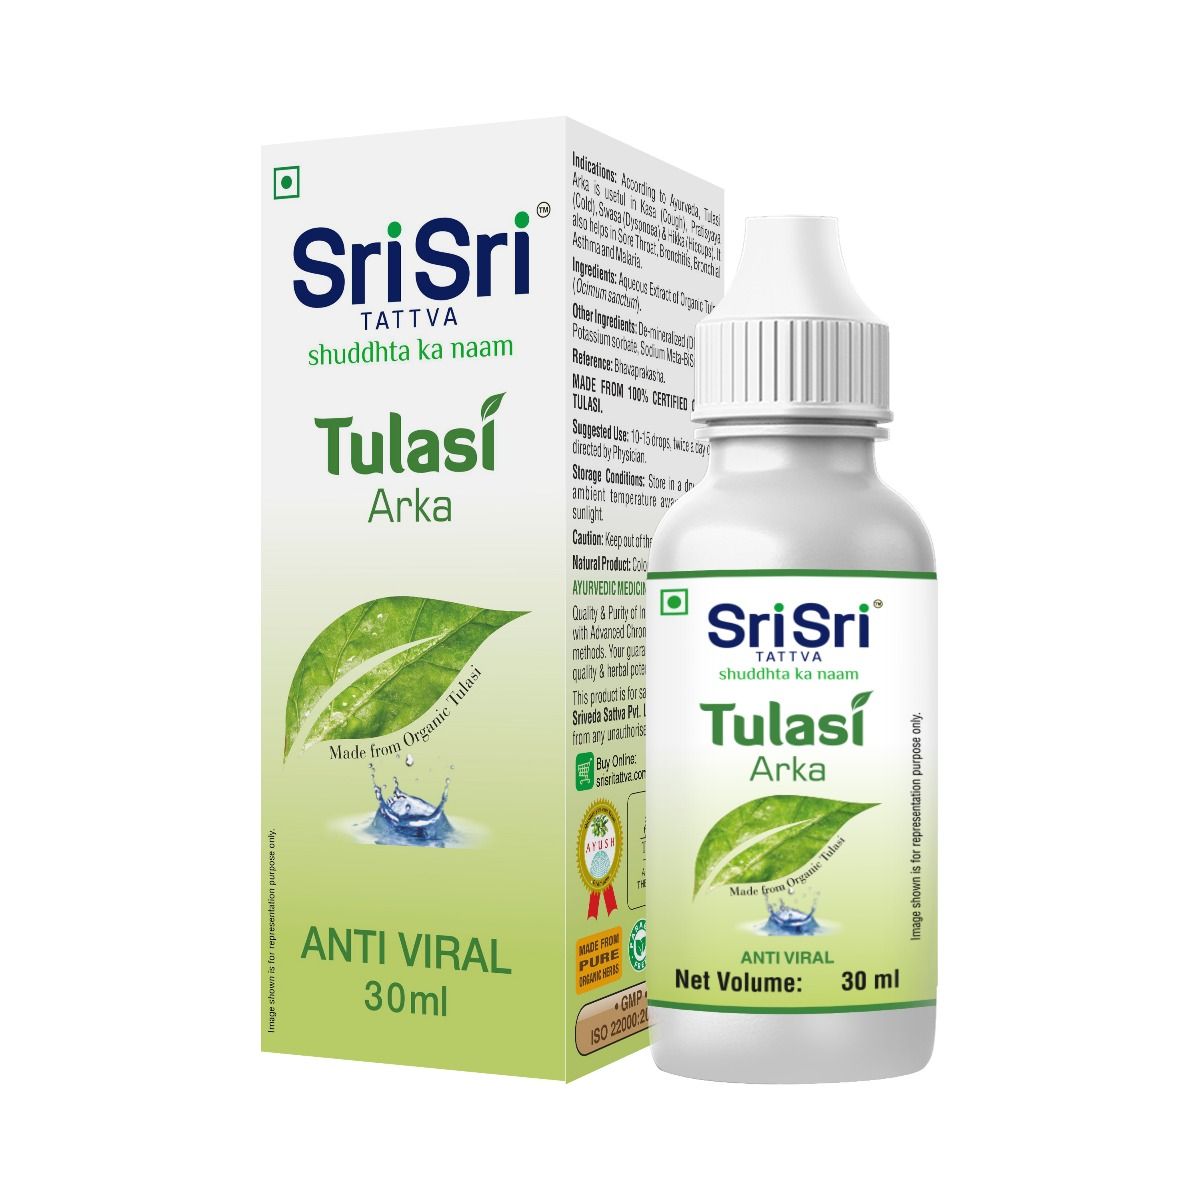 Buy Sri Sri Tattva Tulasi Arka, 30 ml Online